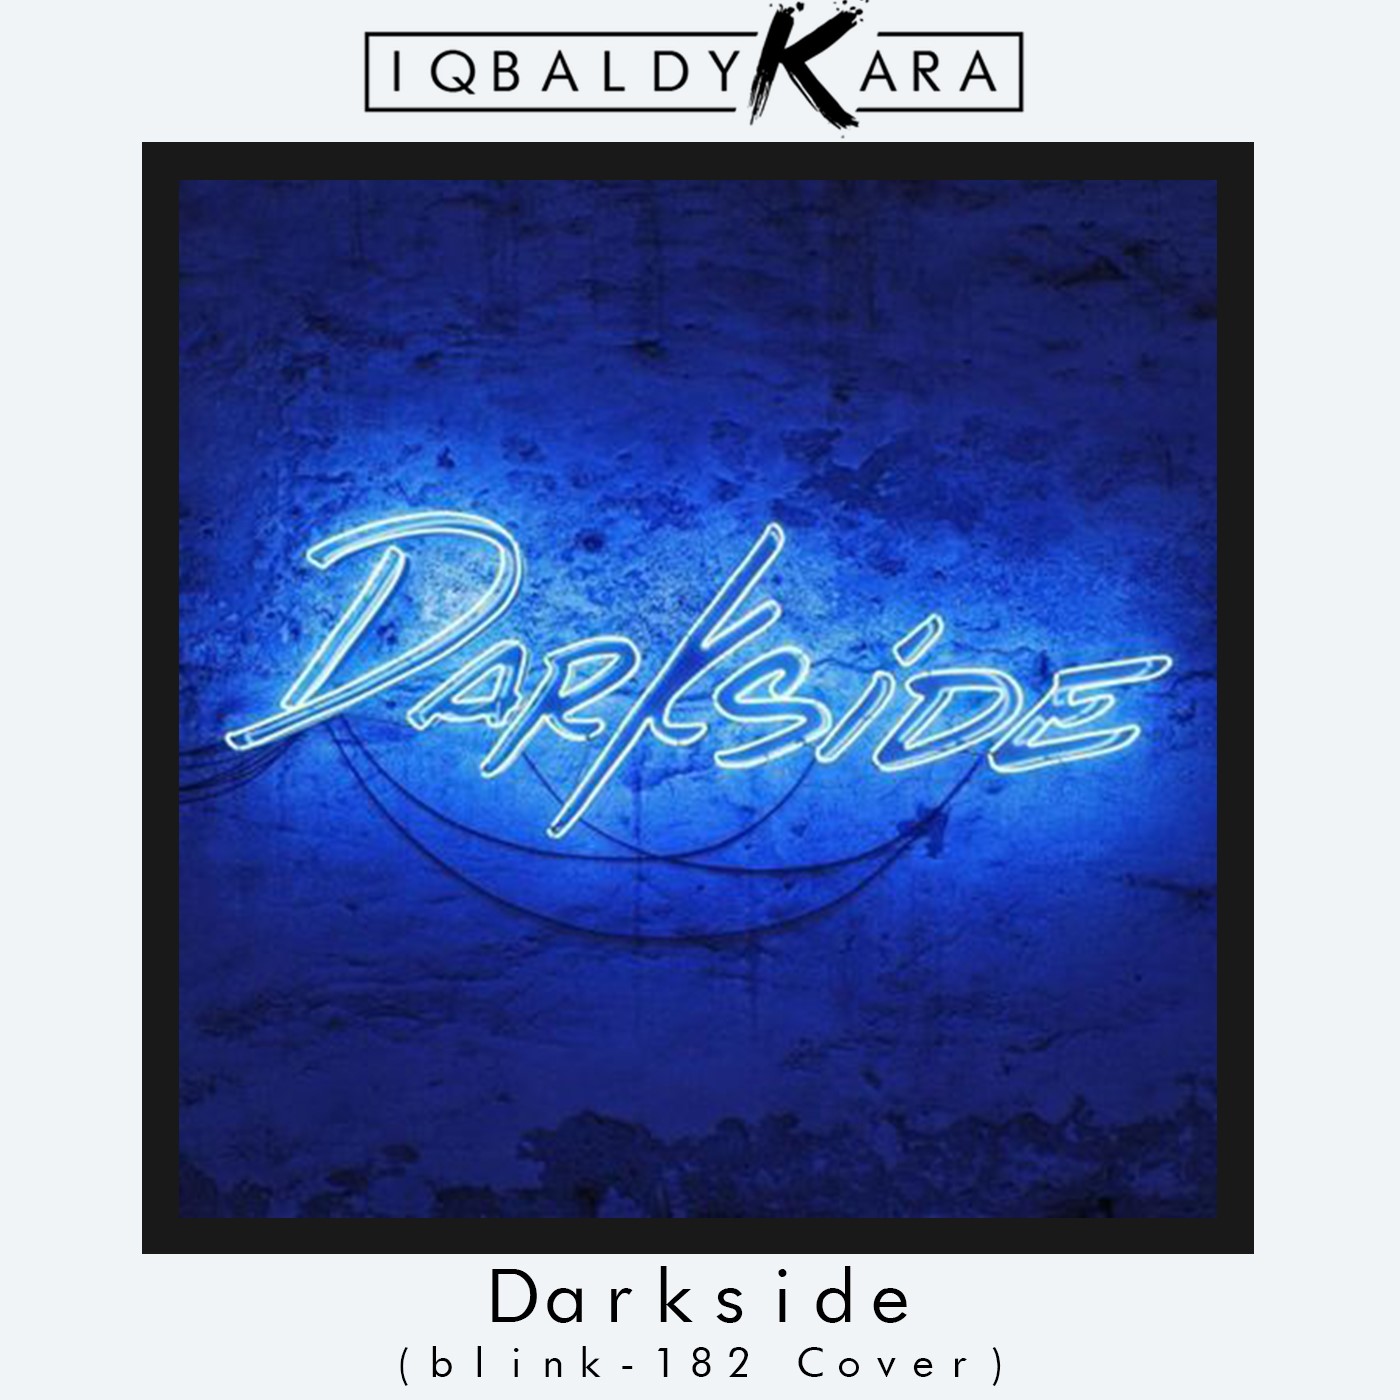 Descarregar Darkside (blink-182 Cover)